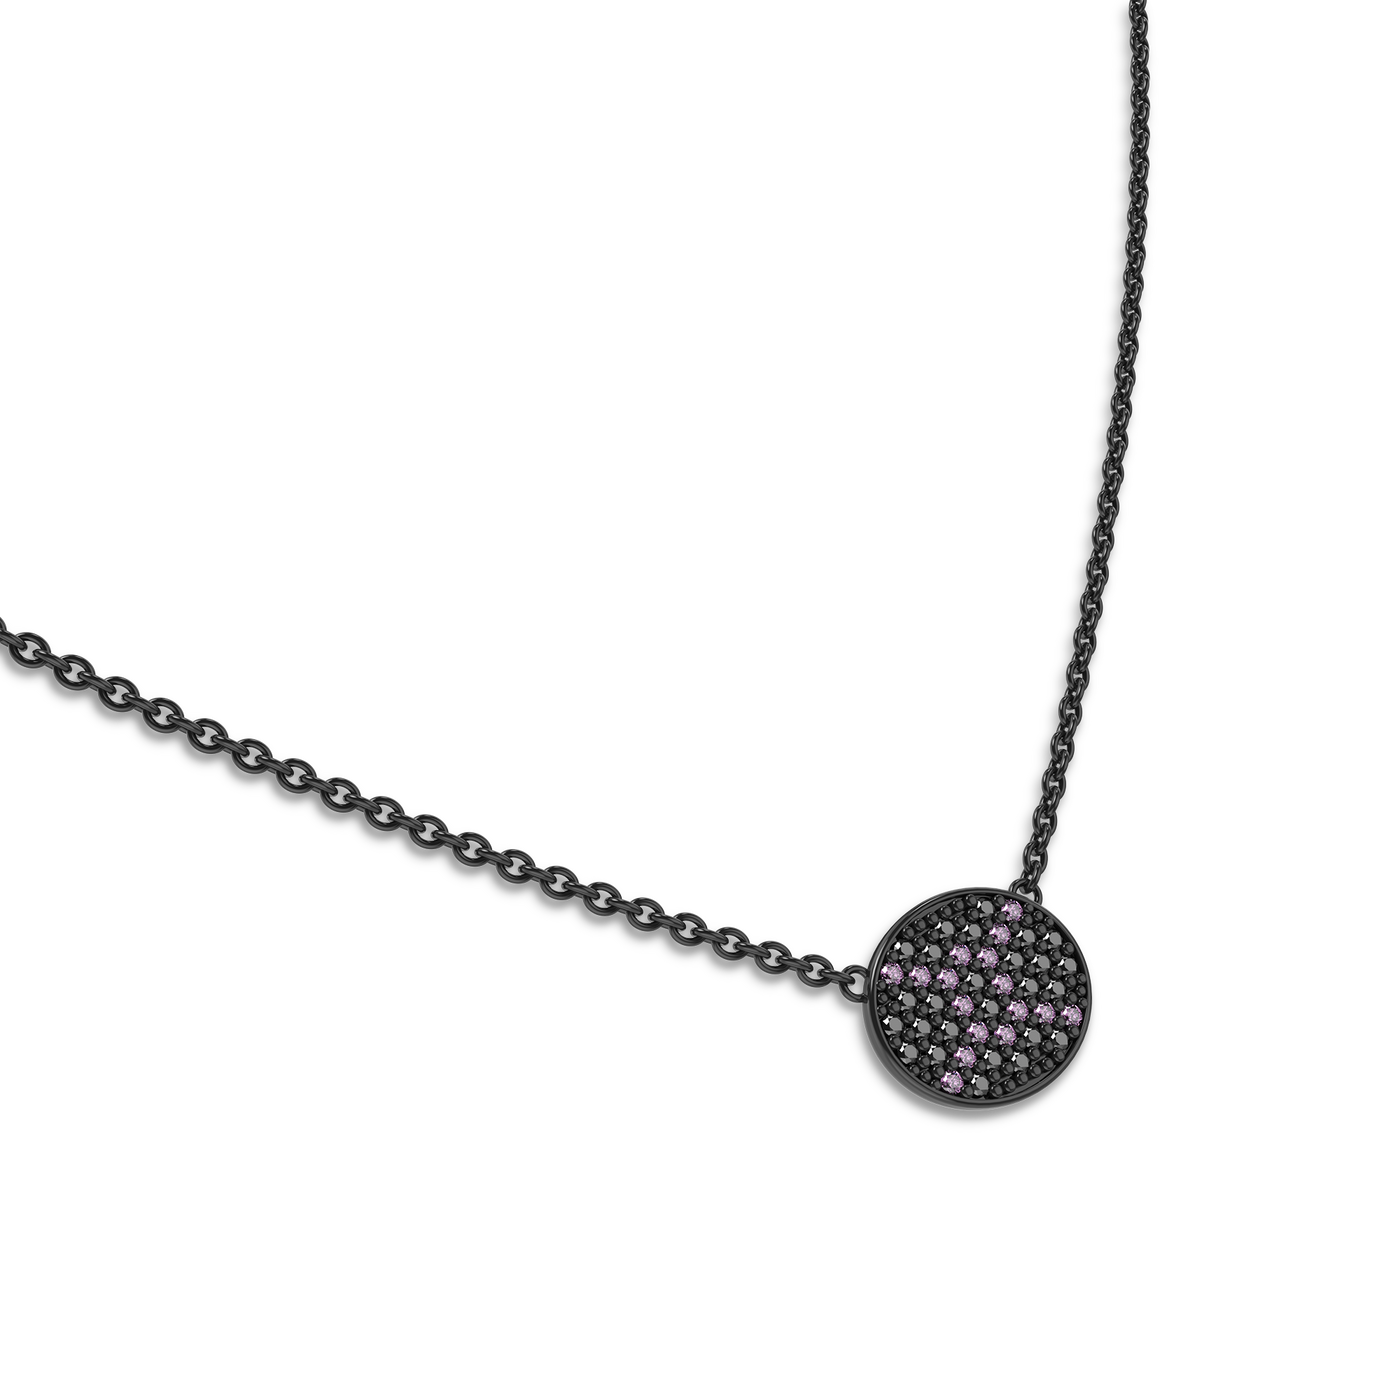 Mélange Gemini Diamond Necklace